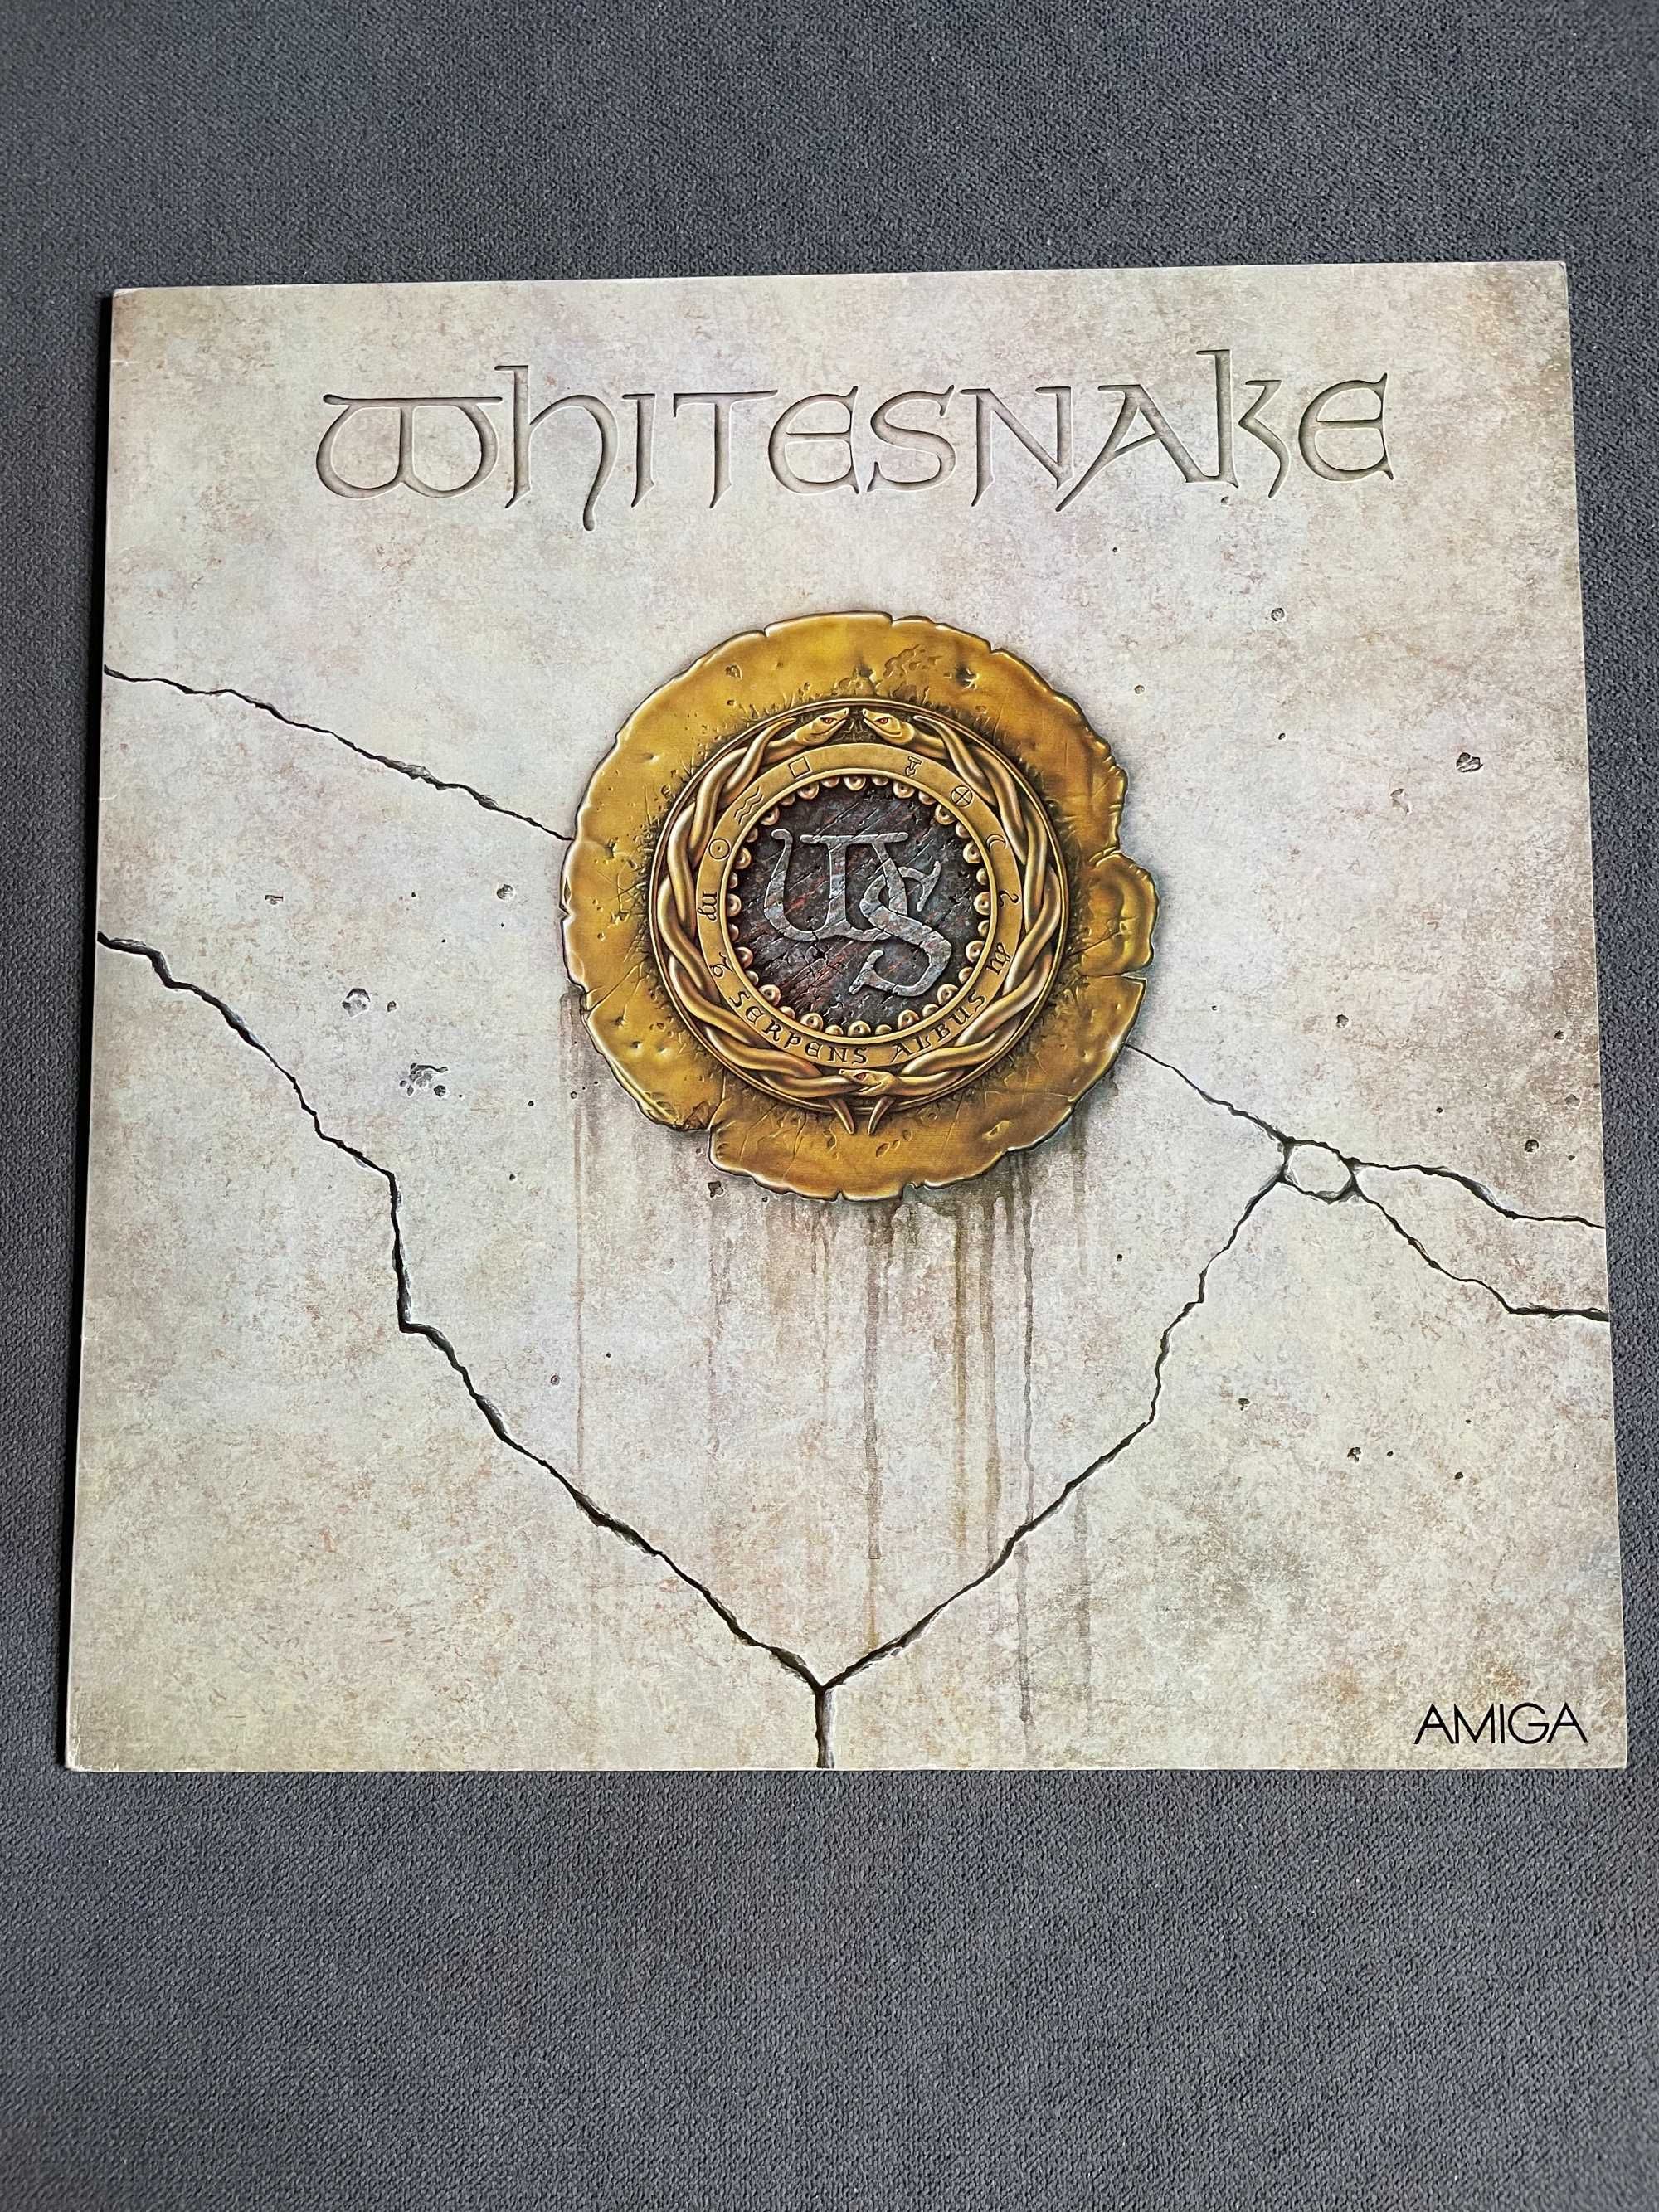 Whitesnake - Whitesnake LP 1989